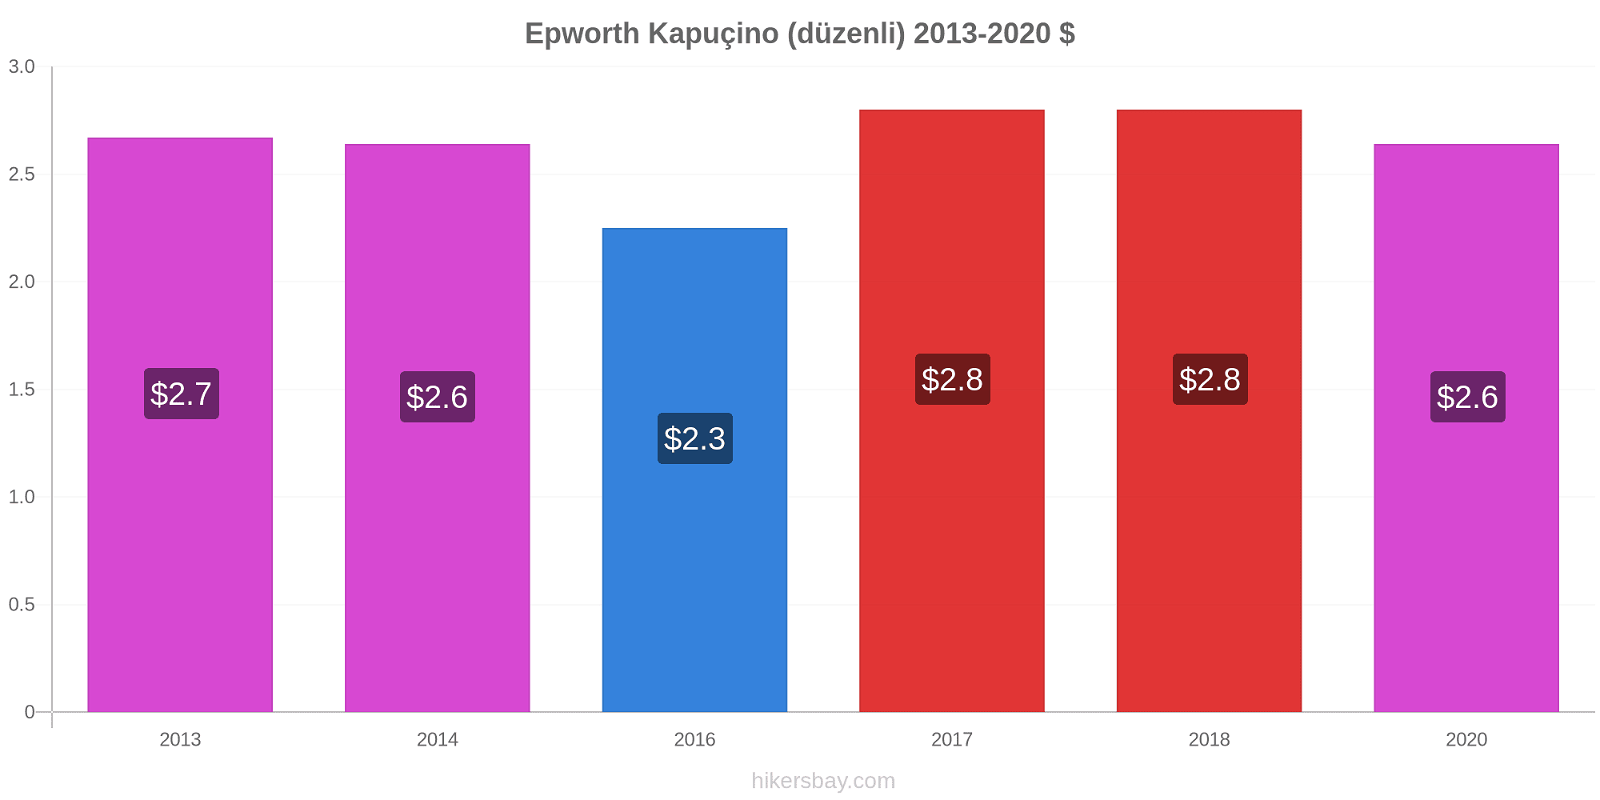 Epworth fiyat değişiklikleri Kapuçino (düzenli) hikersbay.com